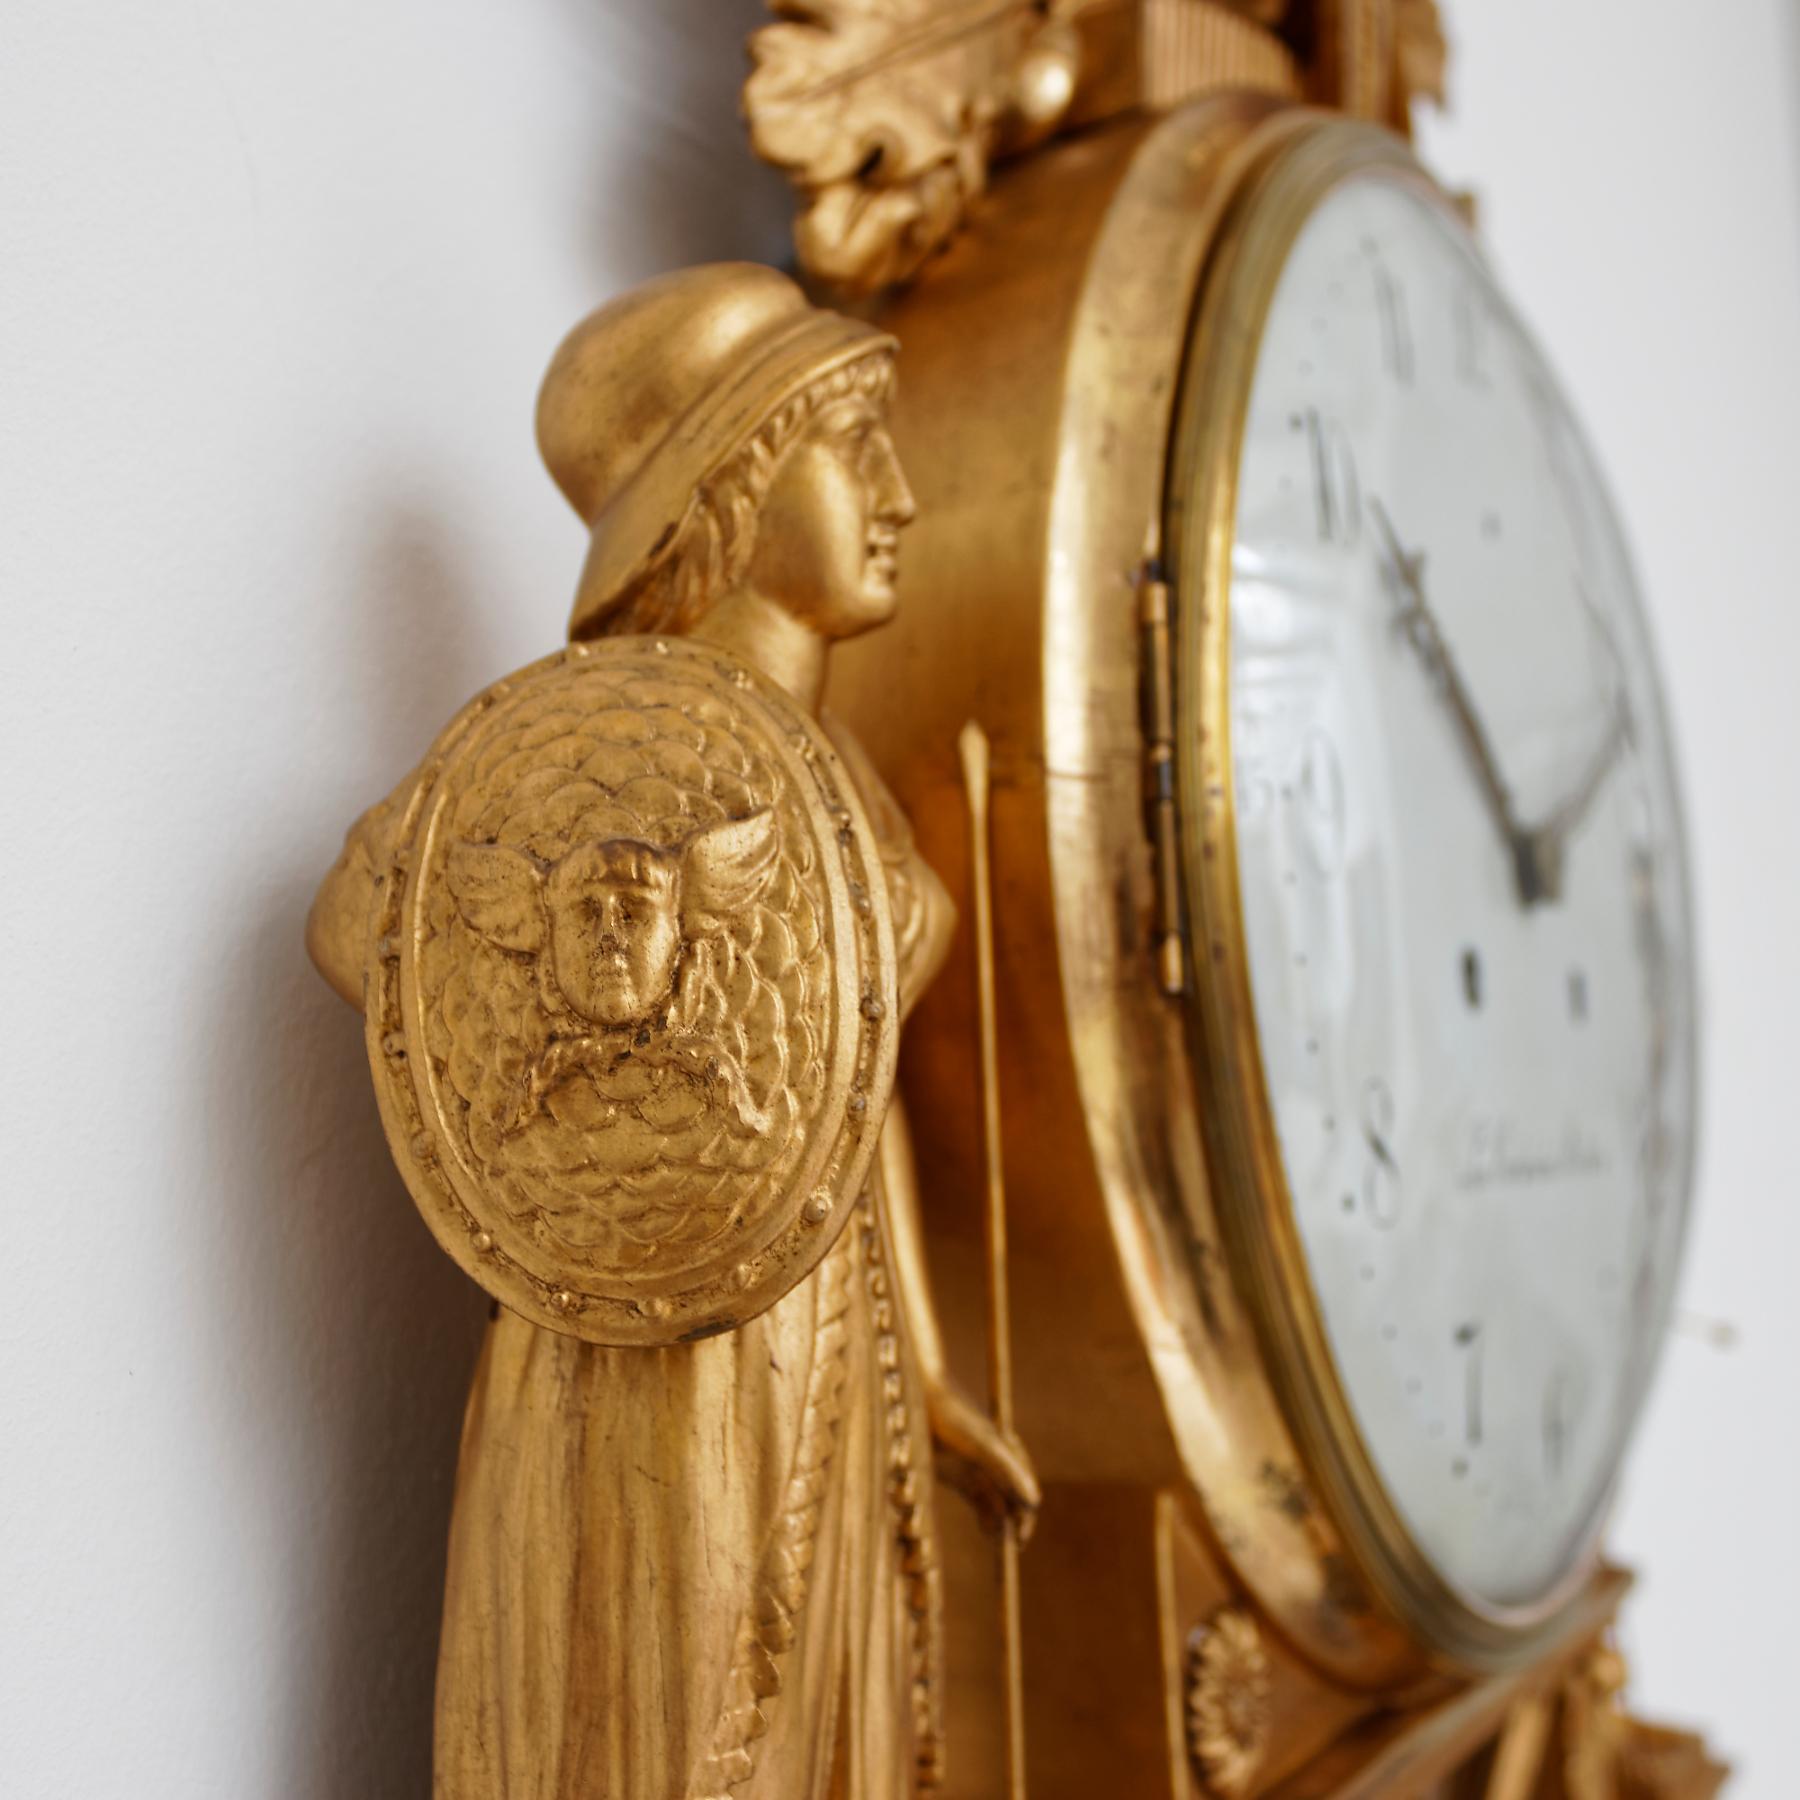 Eine ungewöhnliche schwedische Empire-Wanduhr aus vergoldetem Holz aus dem frühen 19. Jahrhundert. Das weiß lackierte arabische Zifferblatt ist vom Uhrmacher signiert 'Jon. Cederlund Stockholm